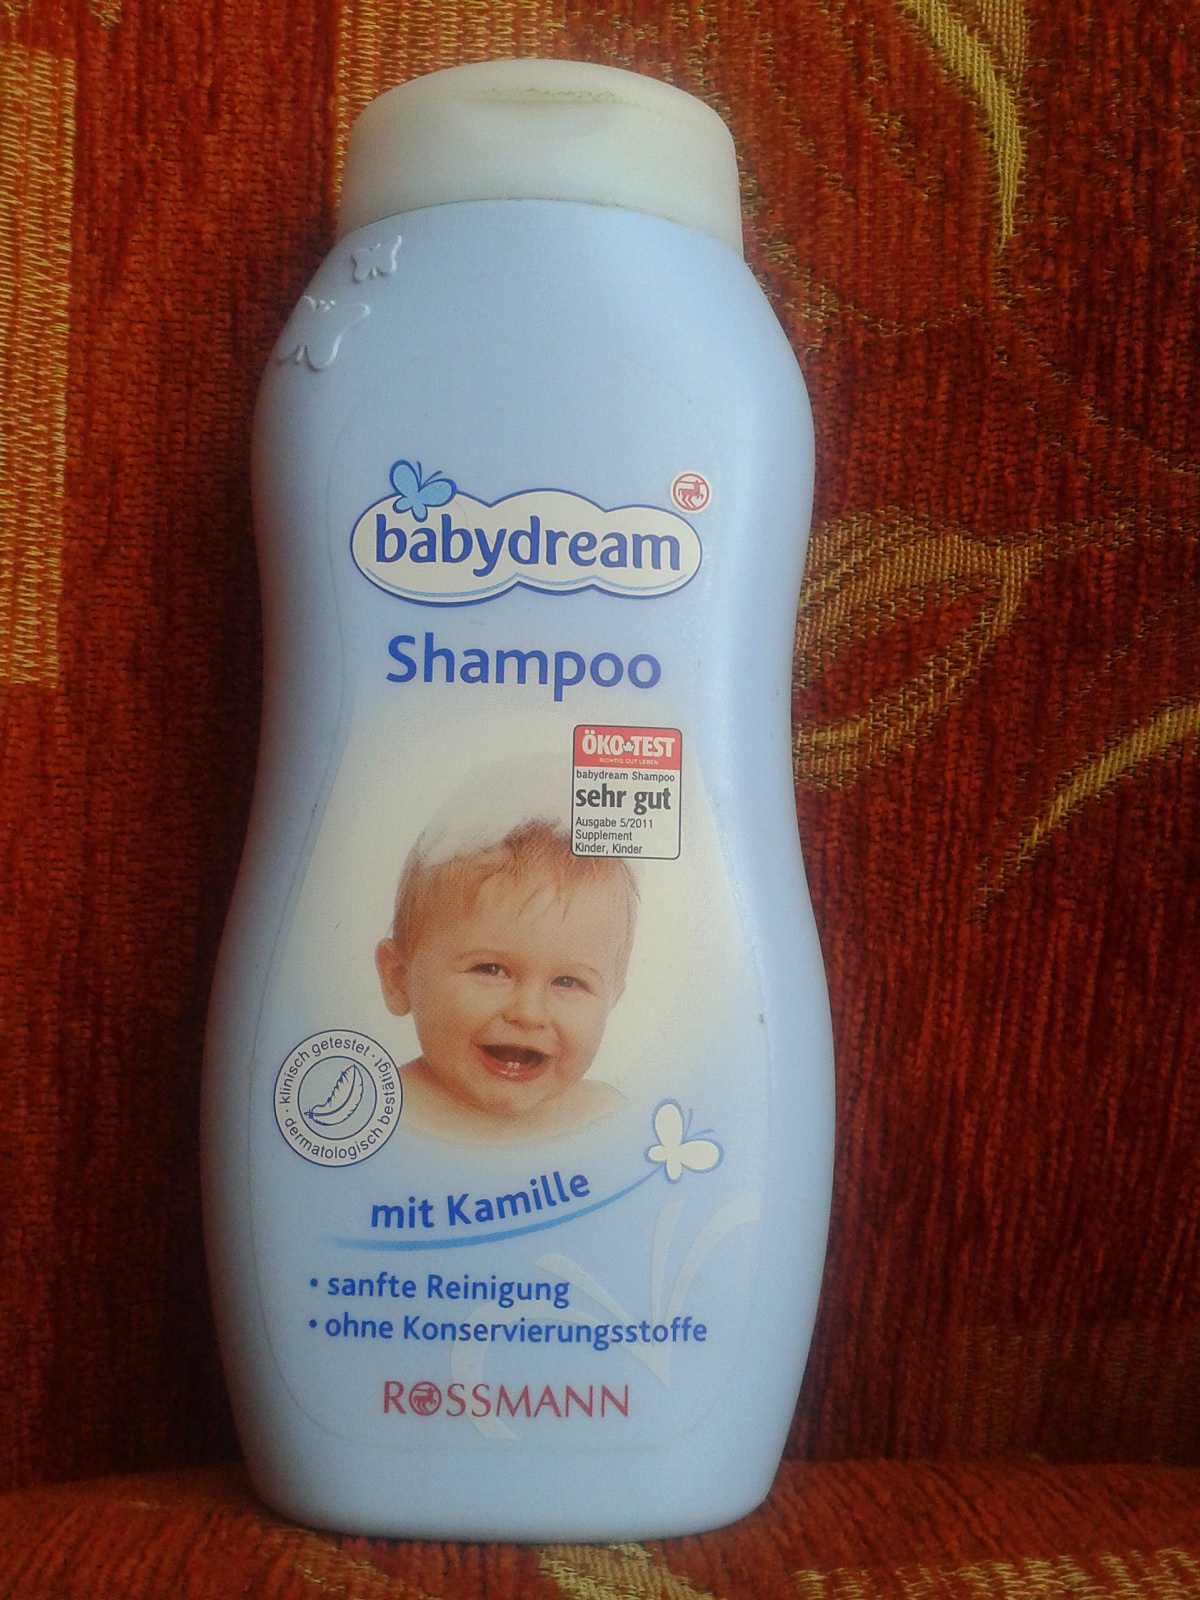 szampon babydream czy ma proteiny